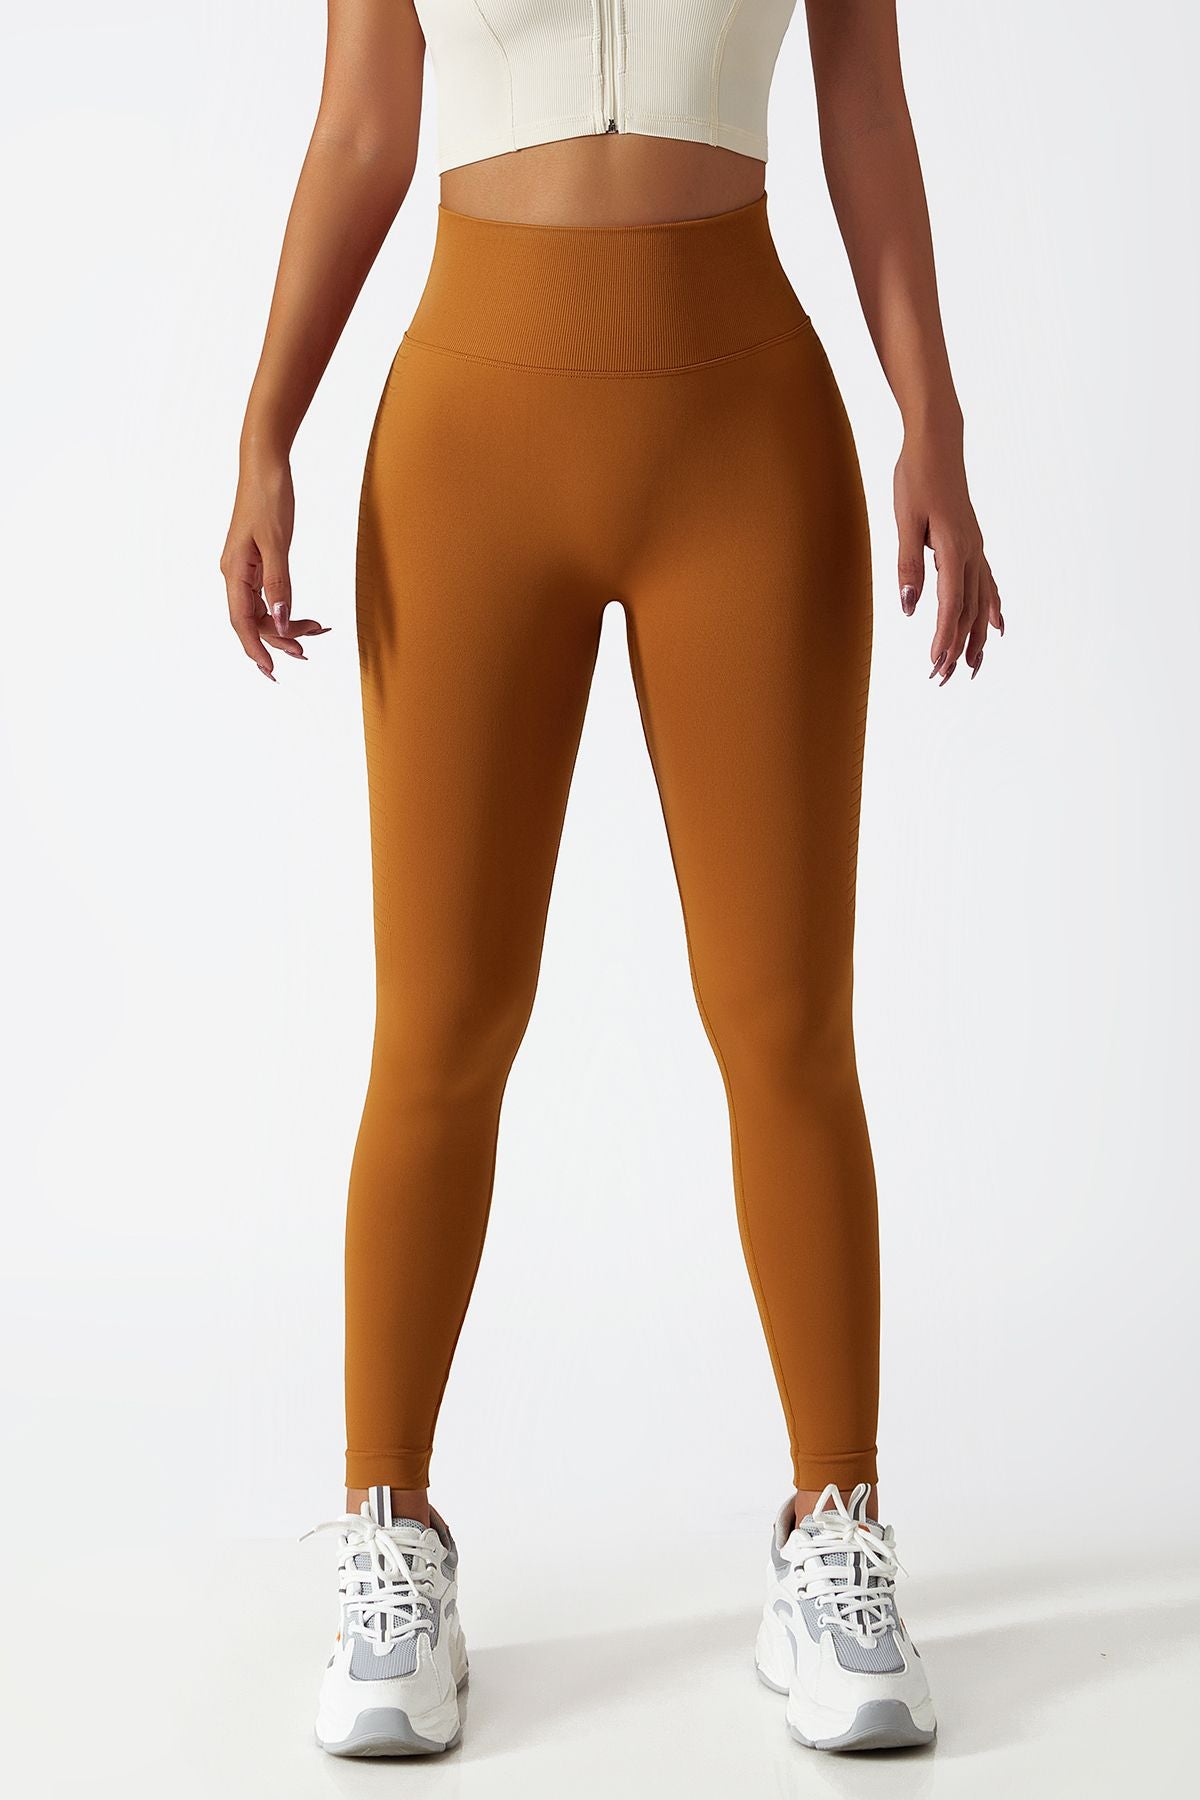 Lululemonlwomen's Buttery Soft Yoga Pants - No Camel Toe, Full Length,  Elastic Waist